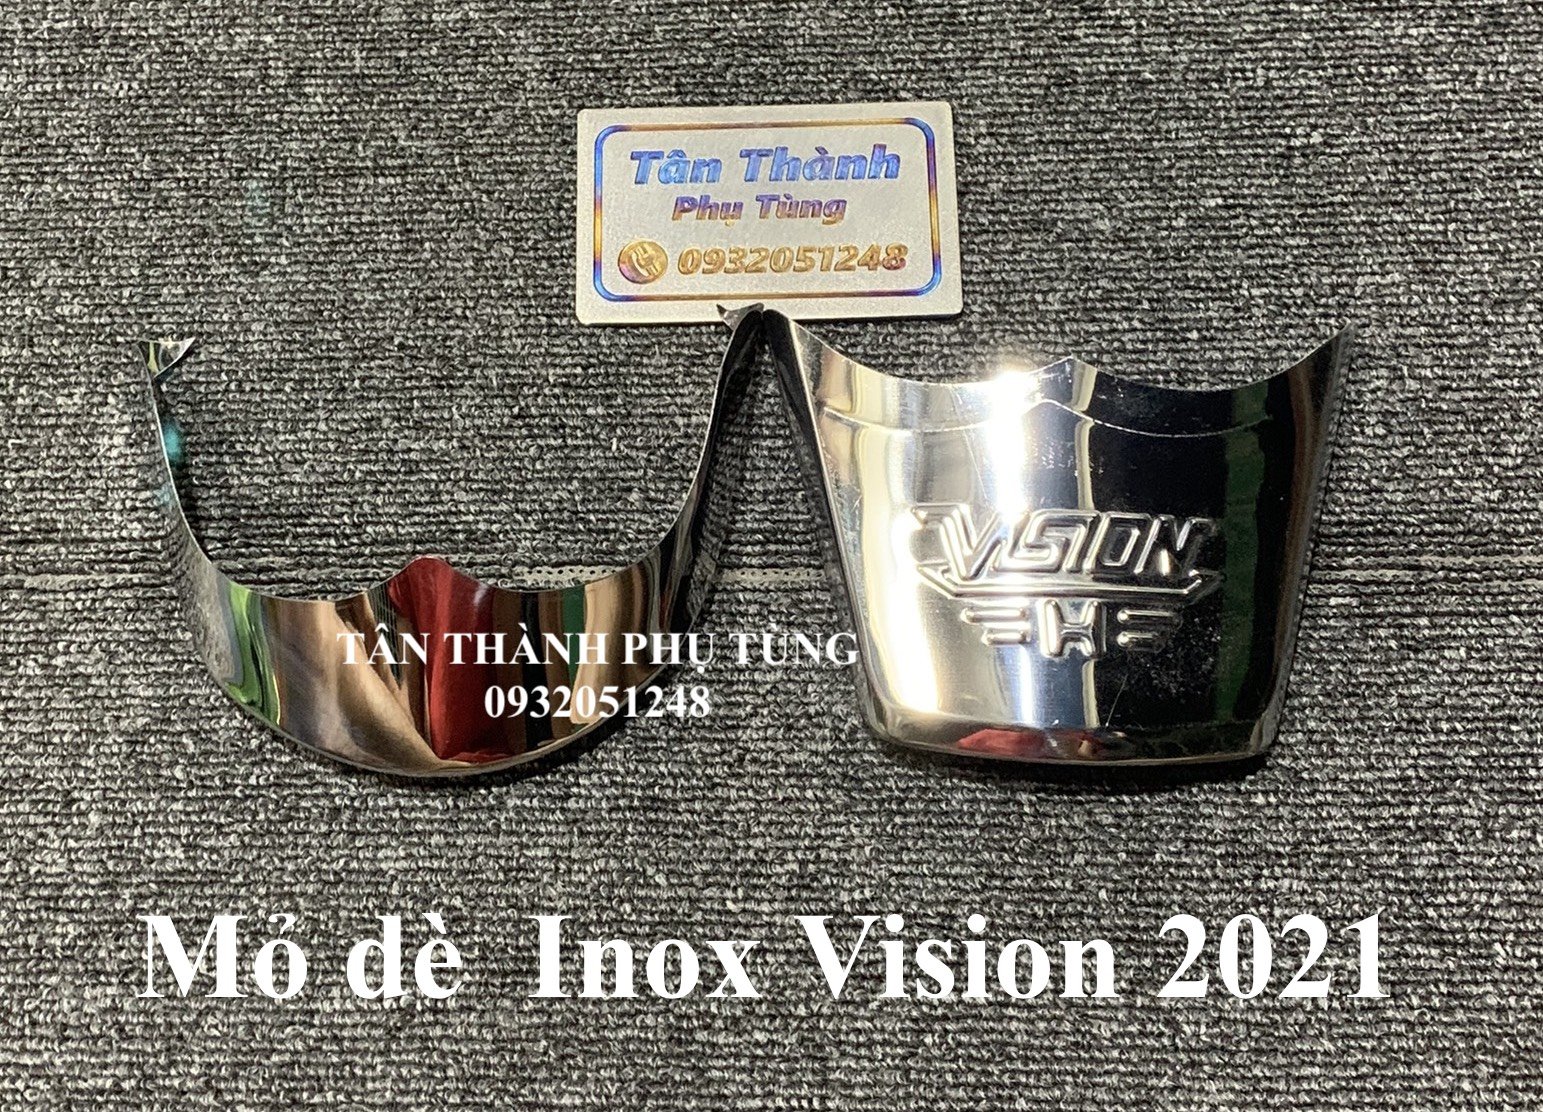 Mỏ dè Inox dành cho Vision đời 2021 (bộ trước + sau)